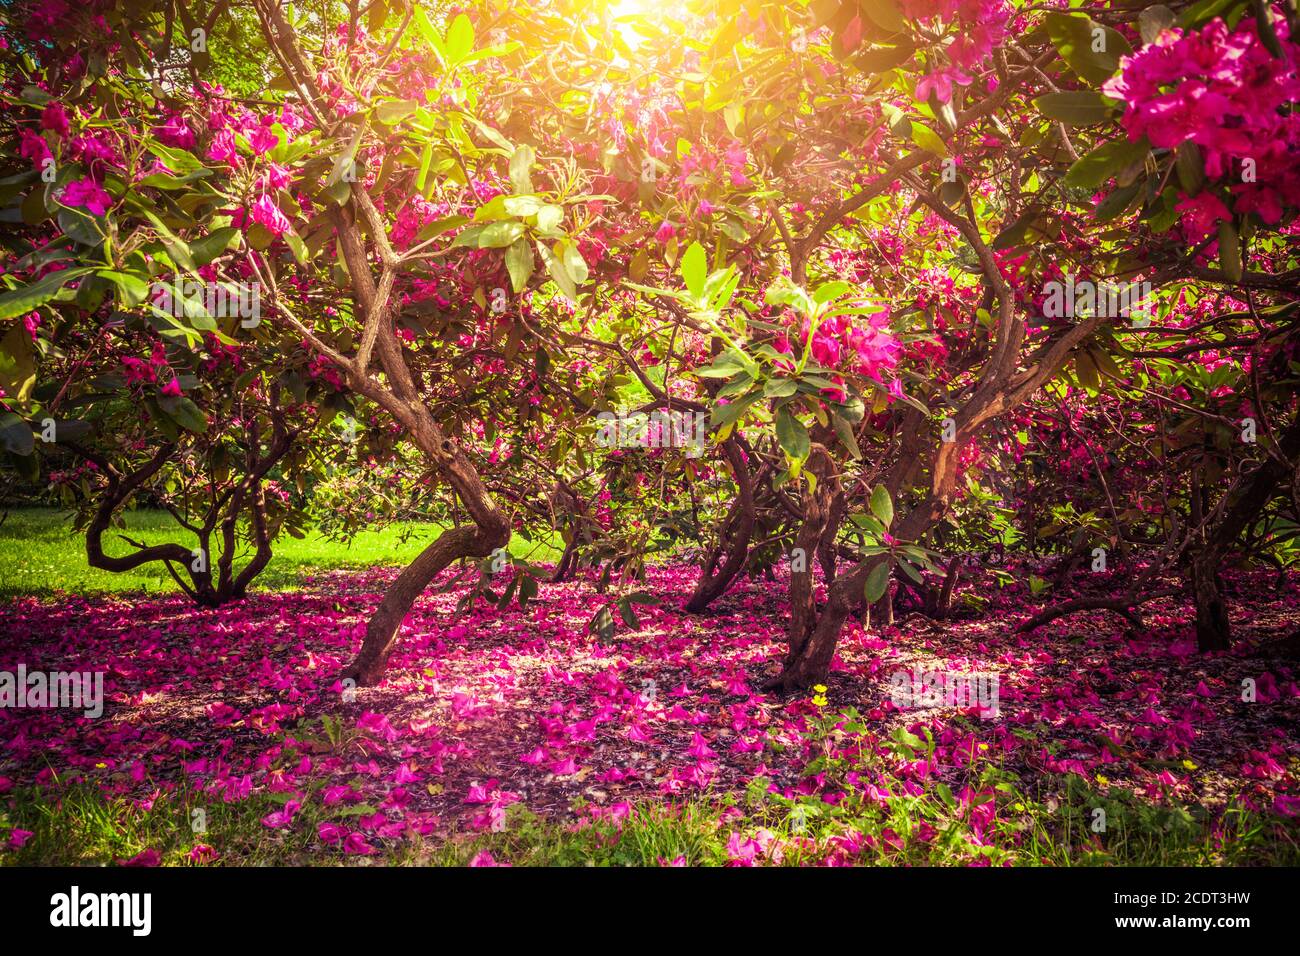 Magnolien Bäume und Blumen im Park, Sonne scheint, romantische Stimmung. Stockfoto